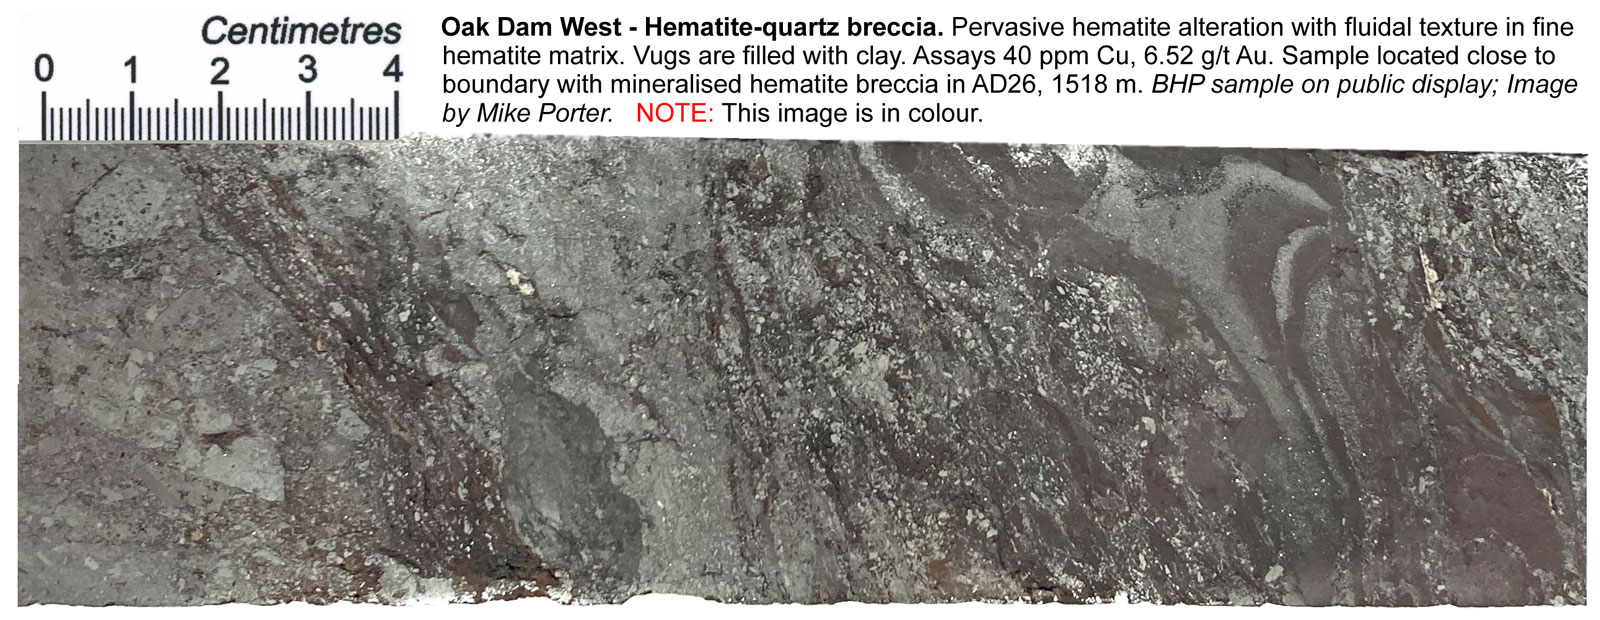 Oak Dam West Hematite-quartz breccia